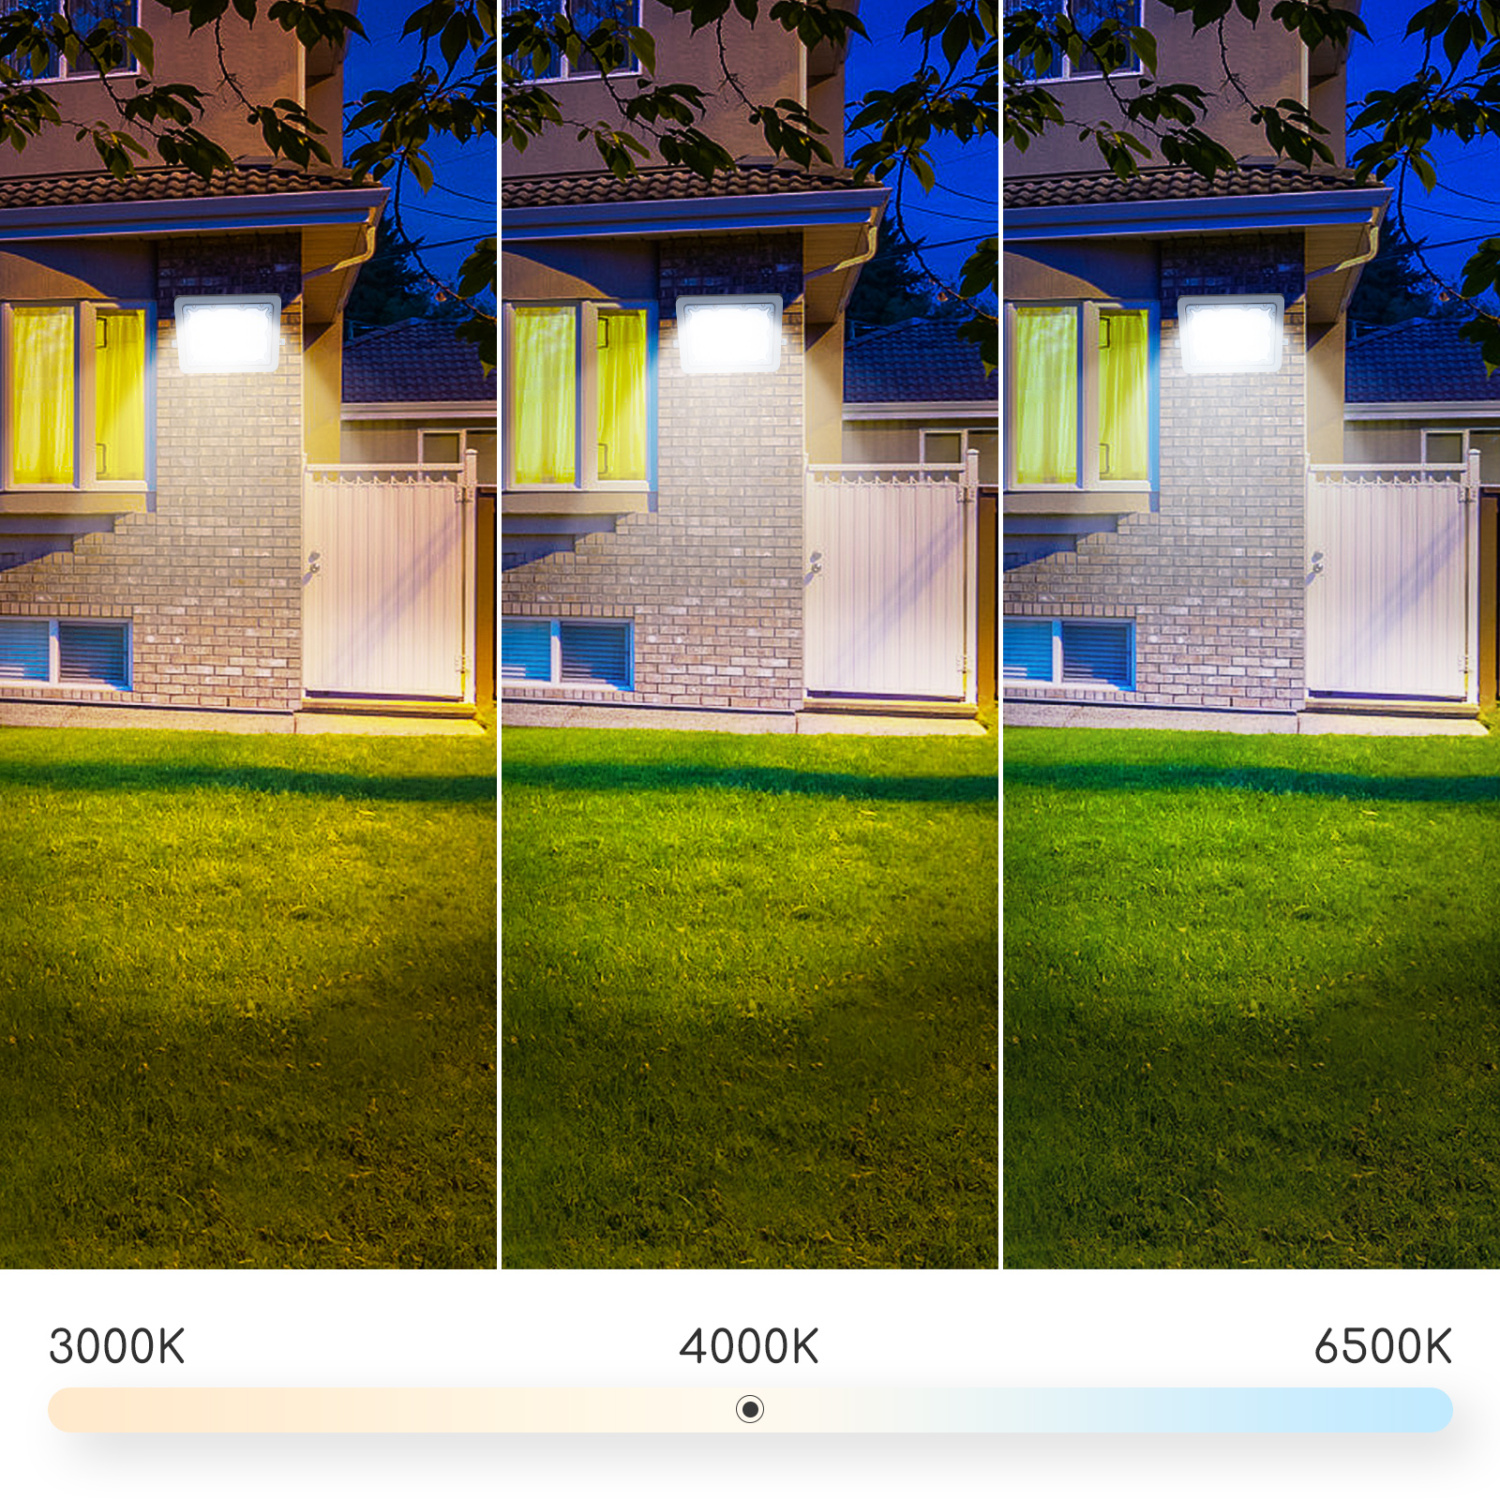 Aigostar LED Esterno, Proiettore da esterno 50W 6500K, Proiettore da esterno 4500LM impermeabile IP65 per cortile, giardino, garage